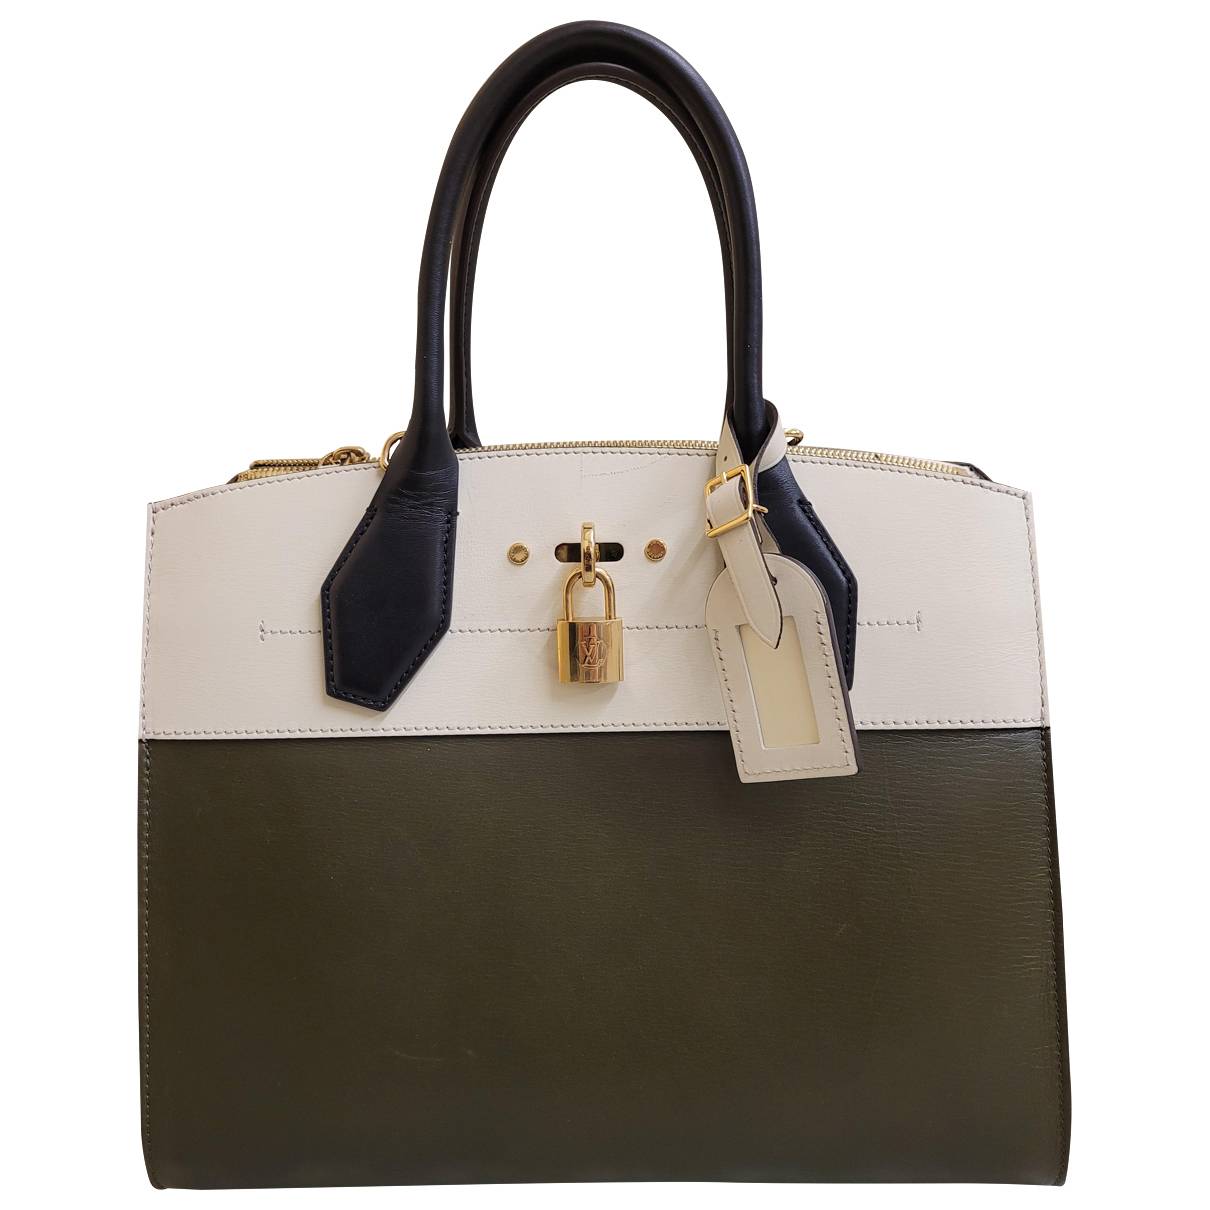 Louis Vuitton - Authenticated City Steamer Handbag - Leather Multicolour Plain for Women, Good Condition